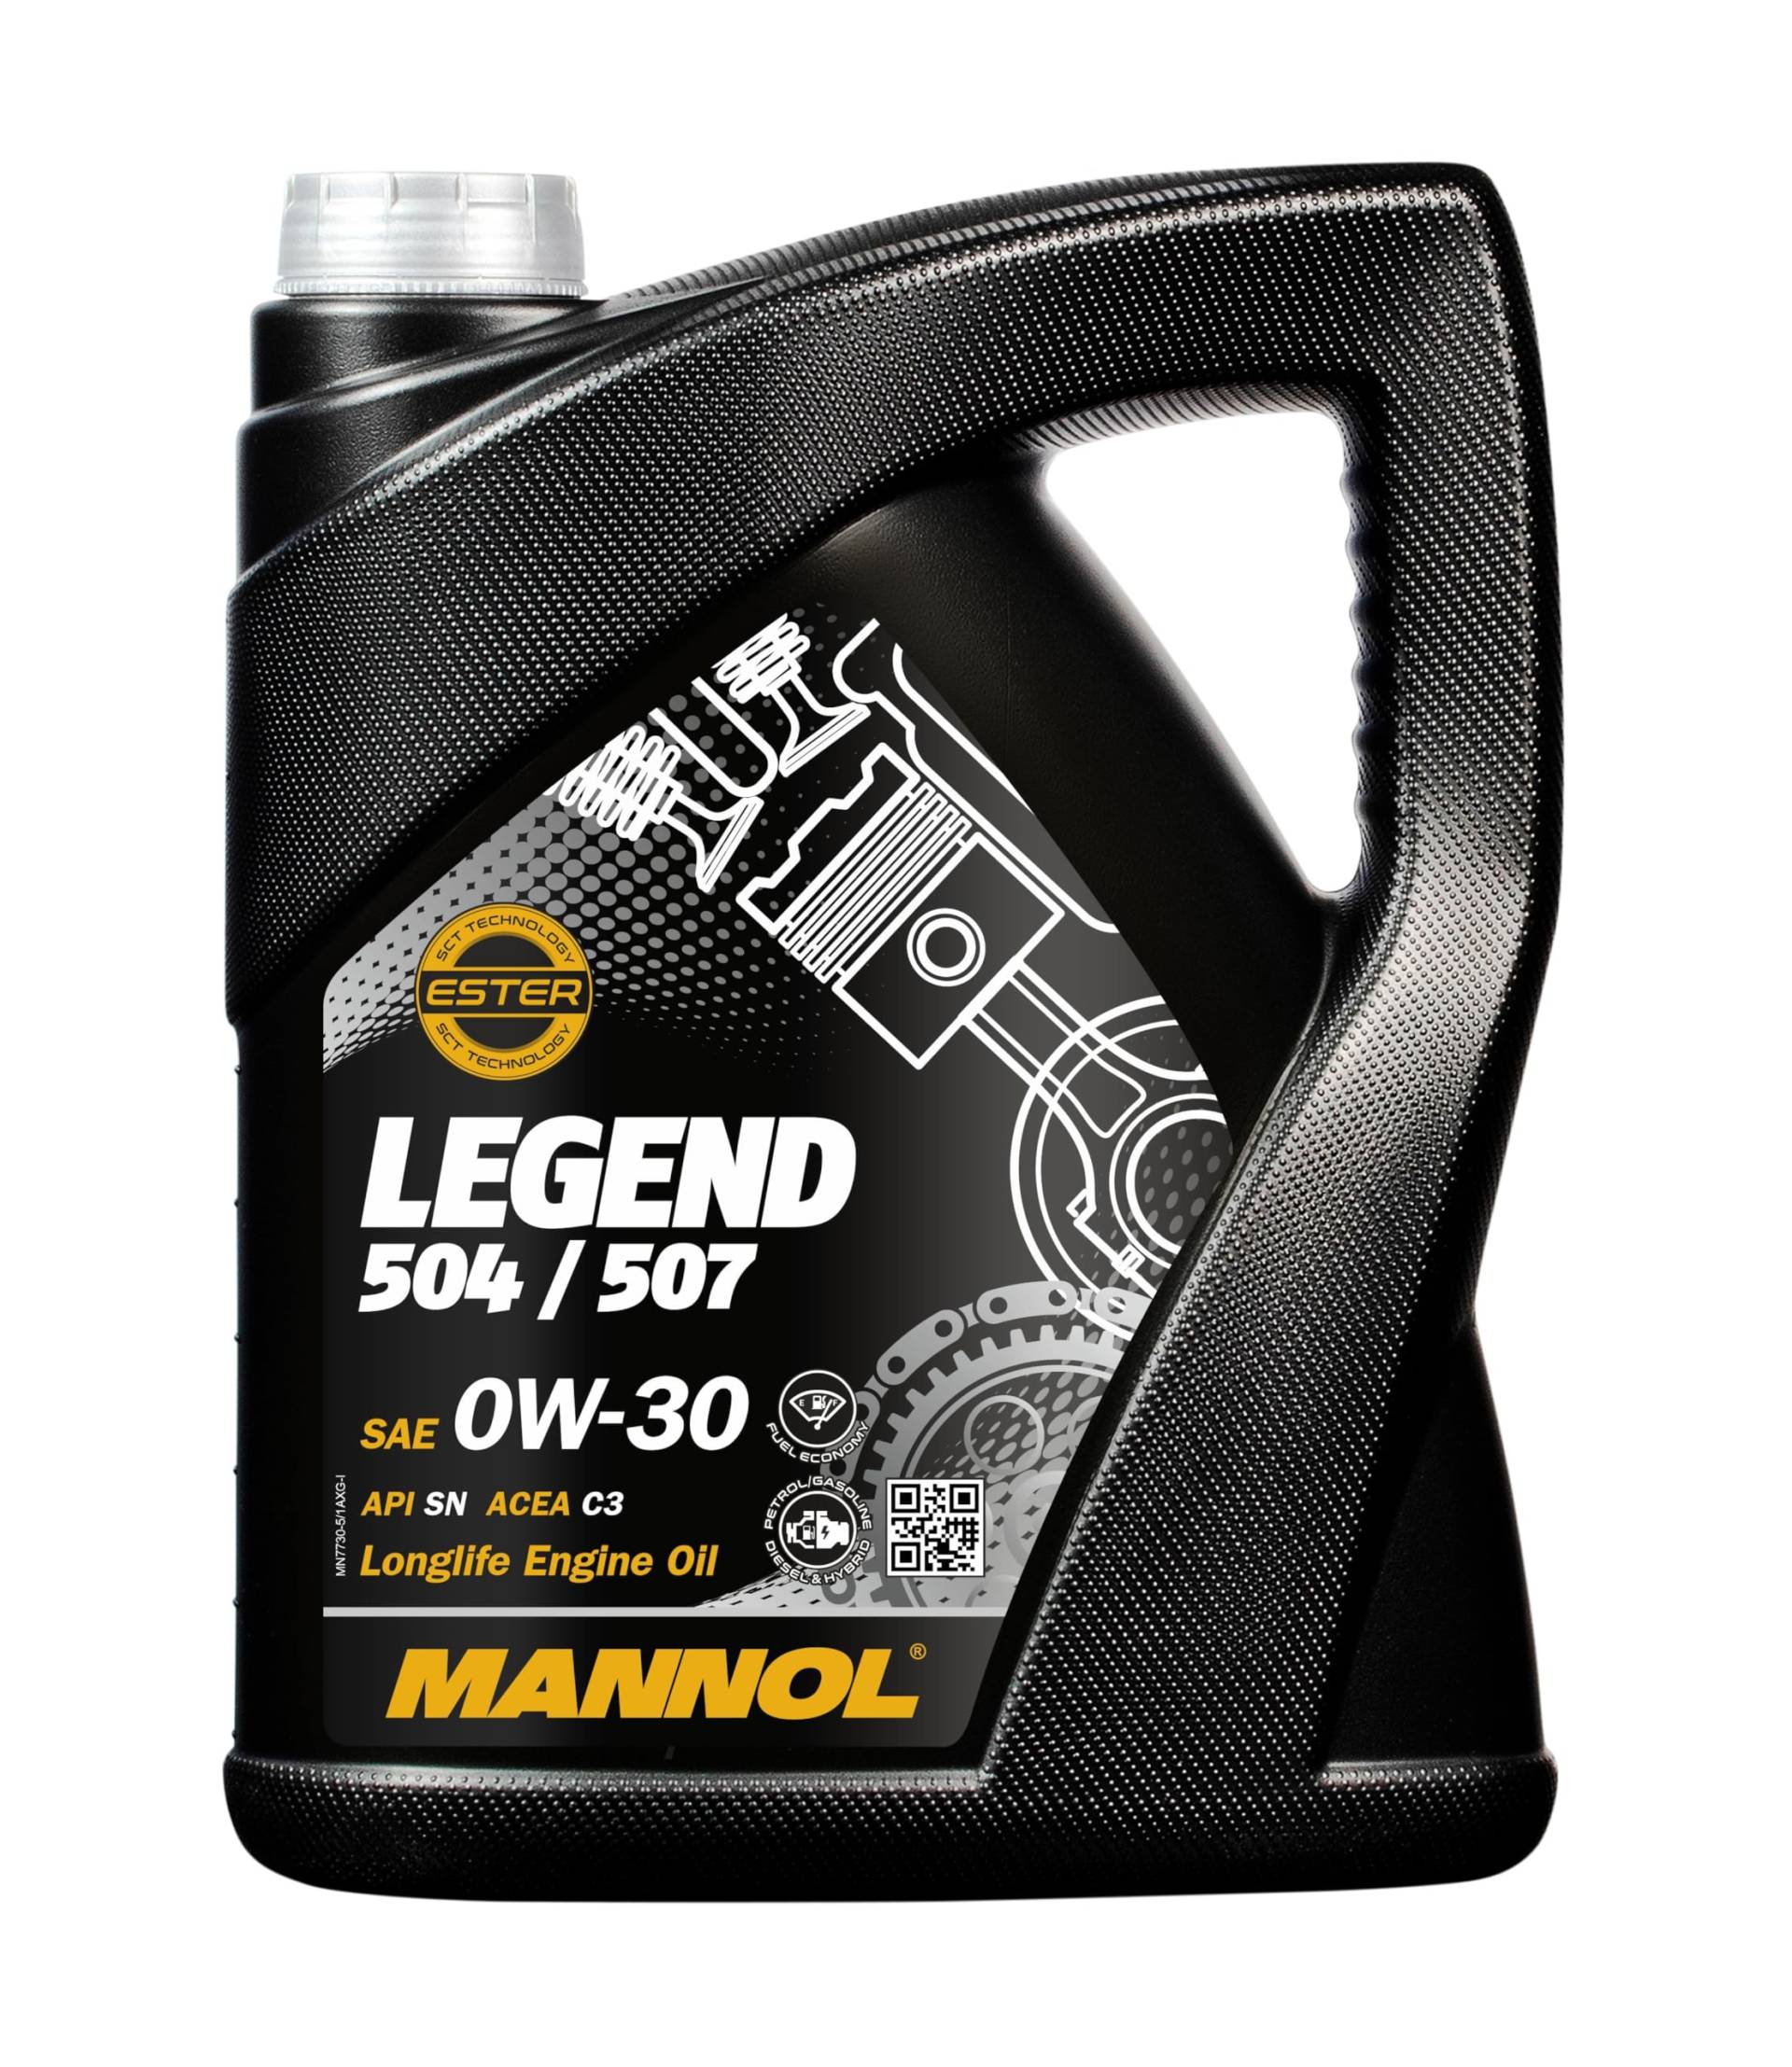 MANNOL Legend Premium 504/507 Motoröl 5L - Vollsynthetisch, optimal für Benzin & Diesel von MANNOL